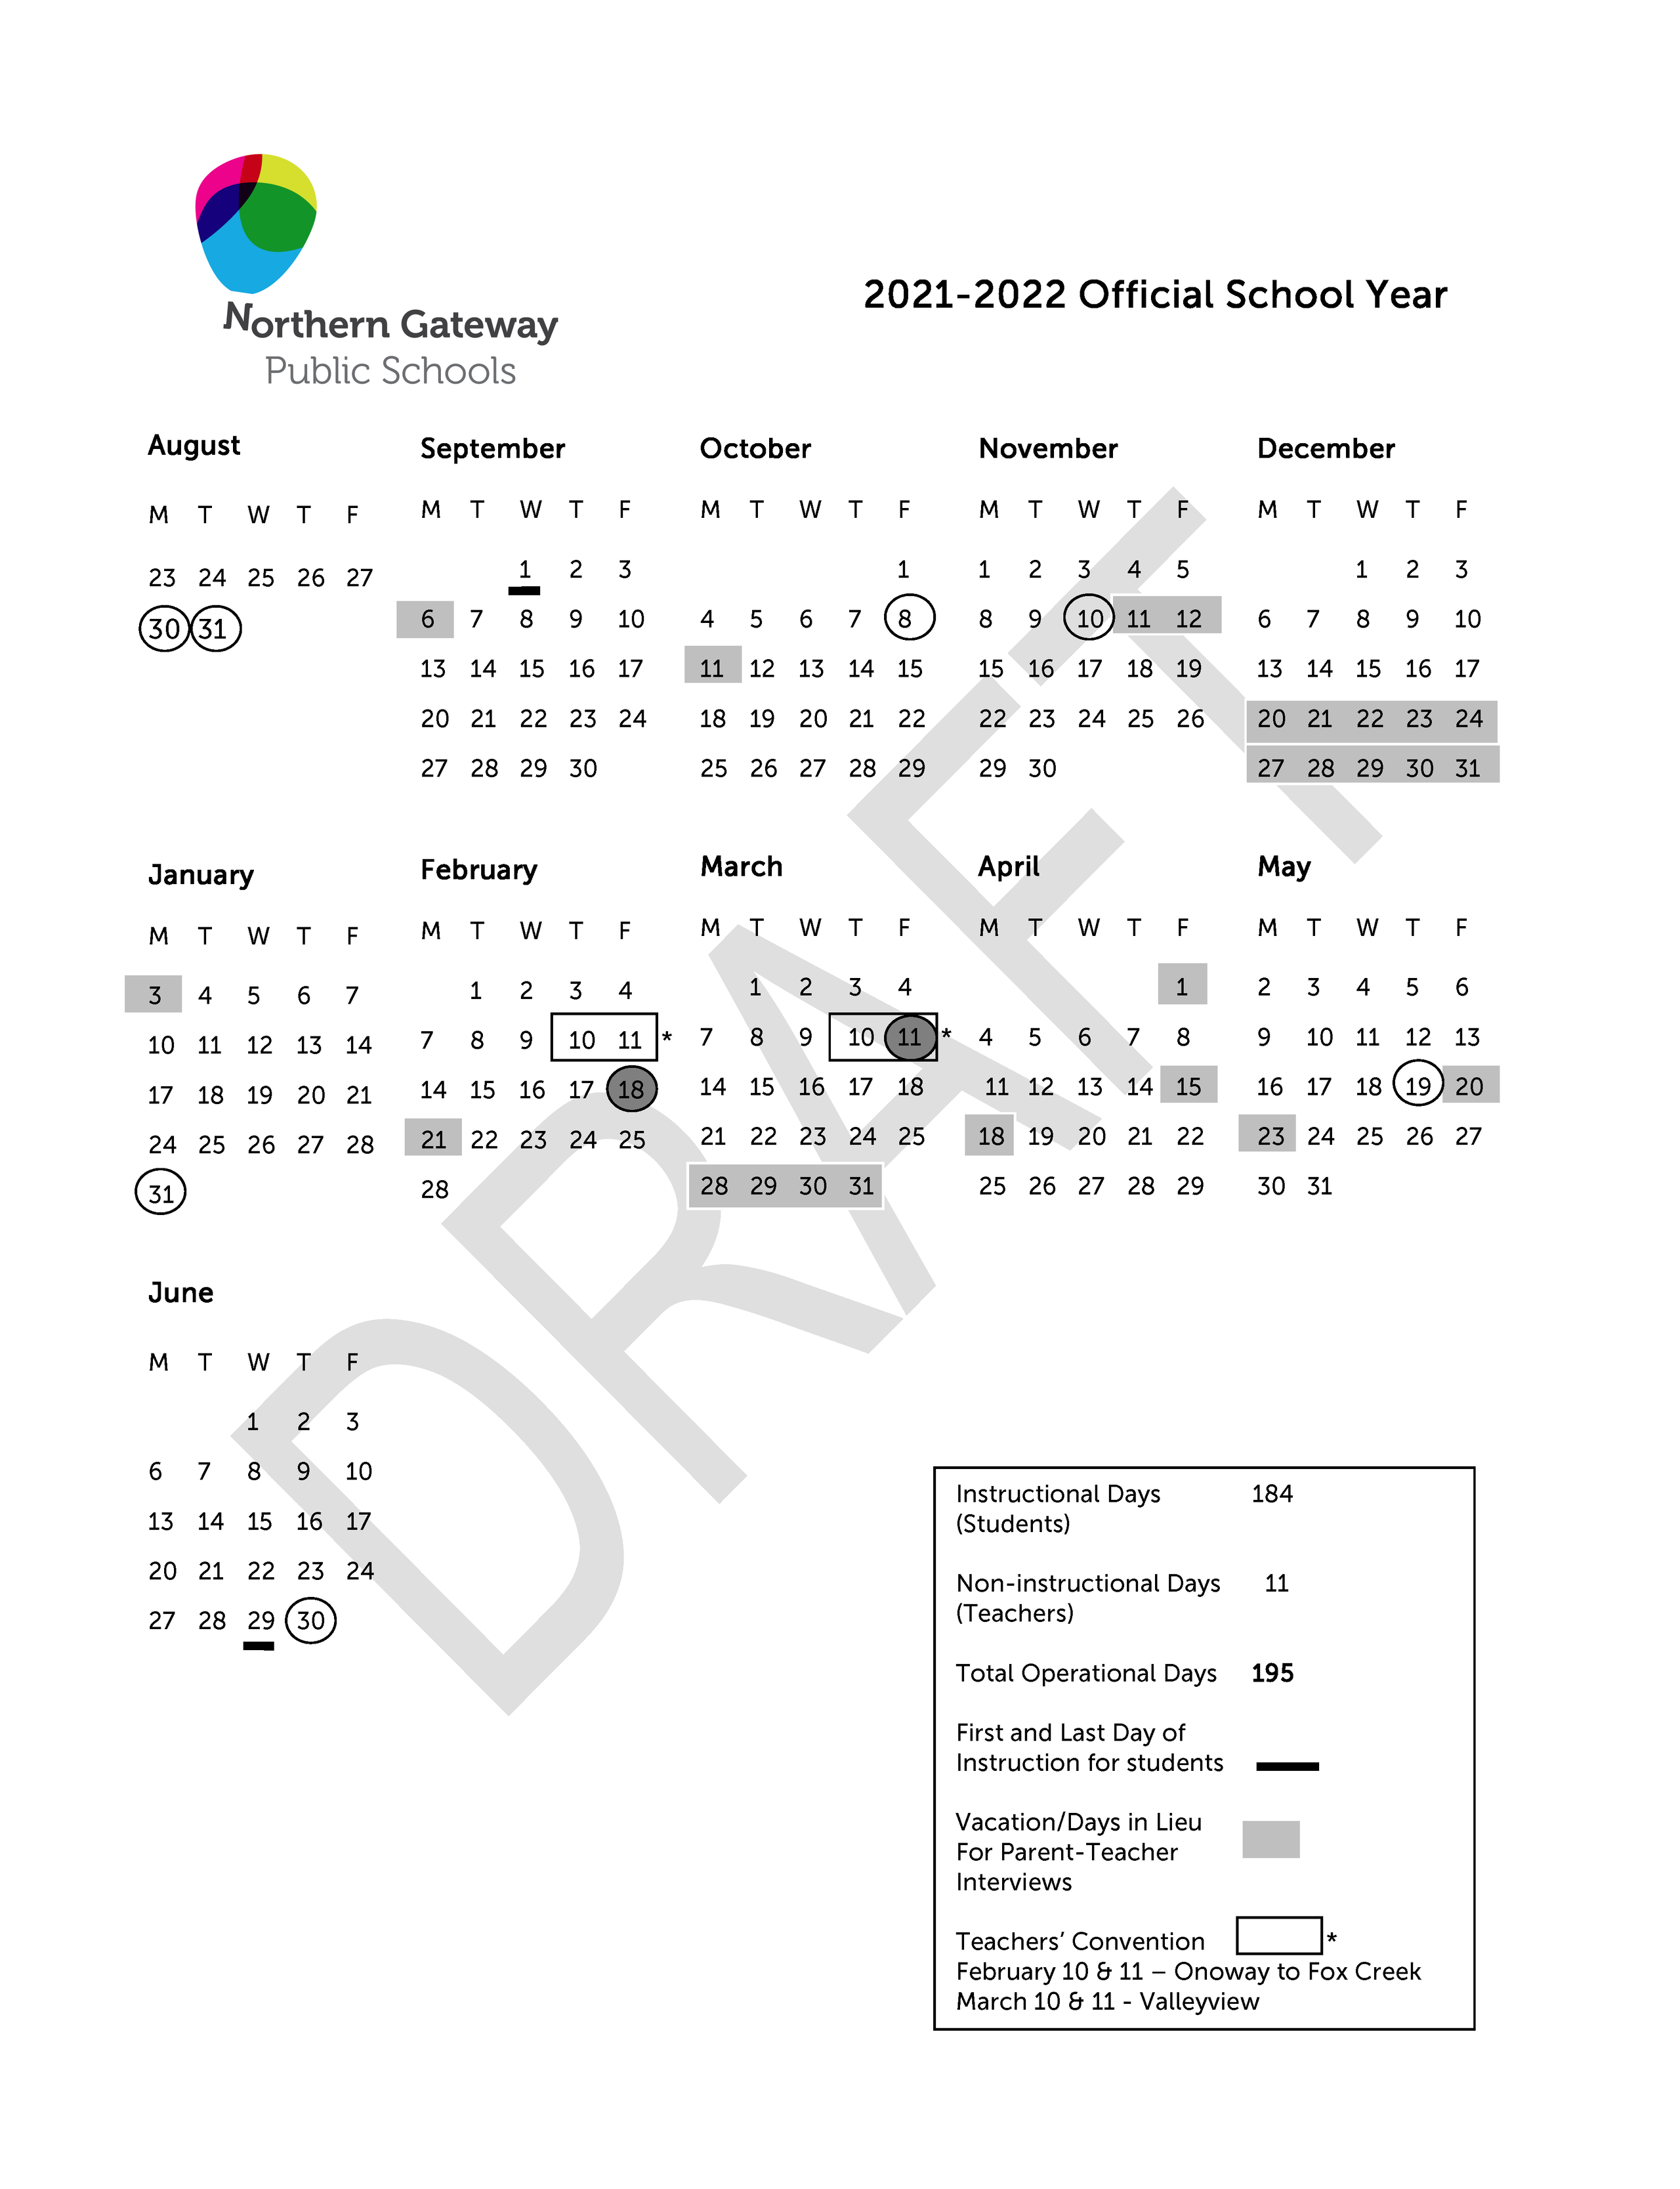 share-your-feedback-on-the-2021-22-draft-school-year-calendar-northern-gateway-public-schools